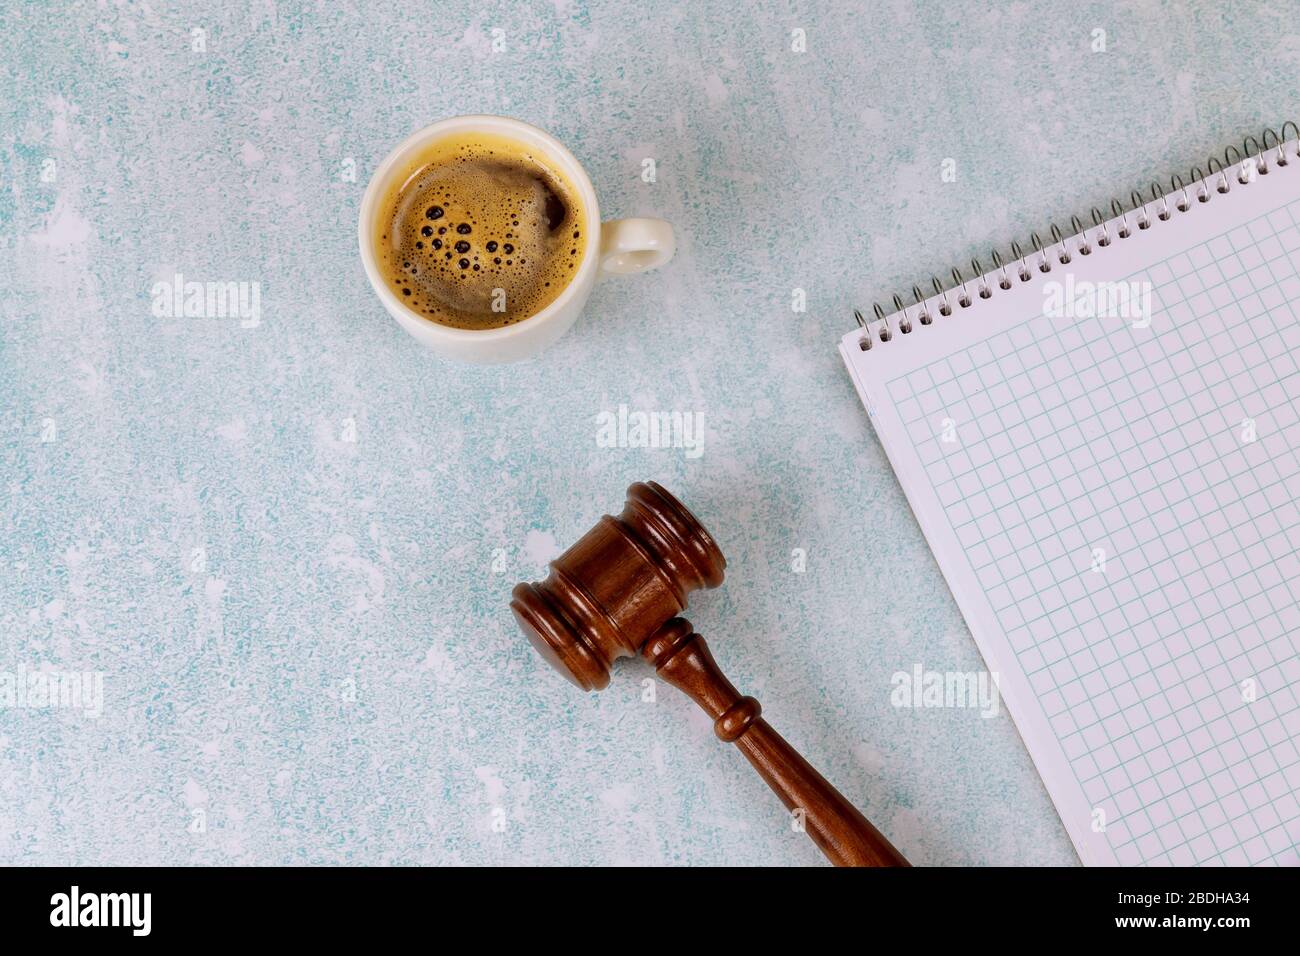 Table de bureau avec des accessoires plats sur un bloc-notes en spirale une tasse de café, juge le bureau de justice juridique de la gavel Banque D'Images